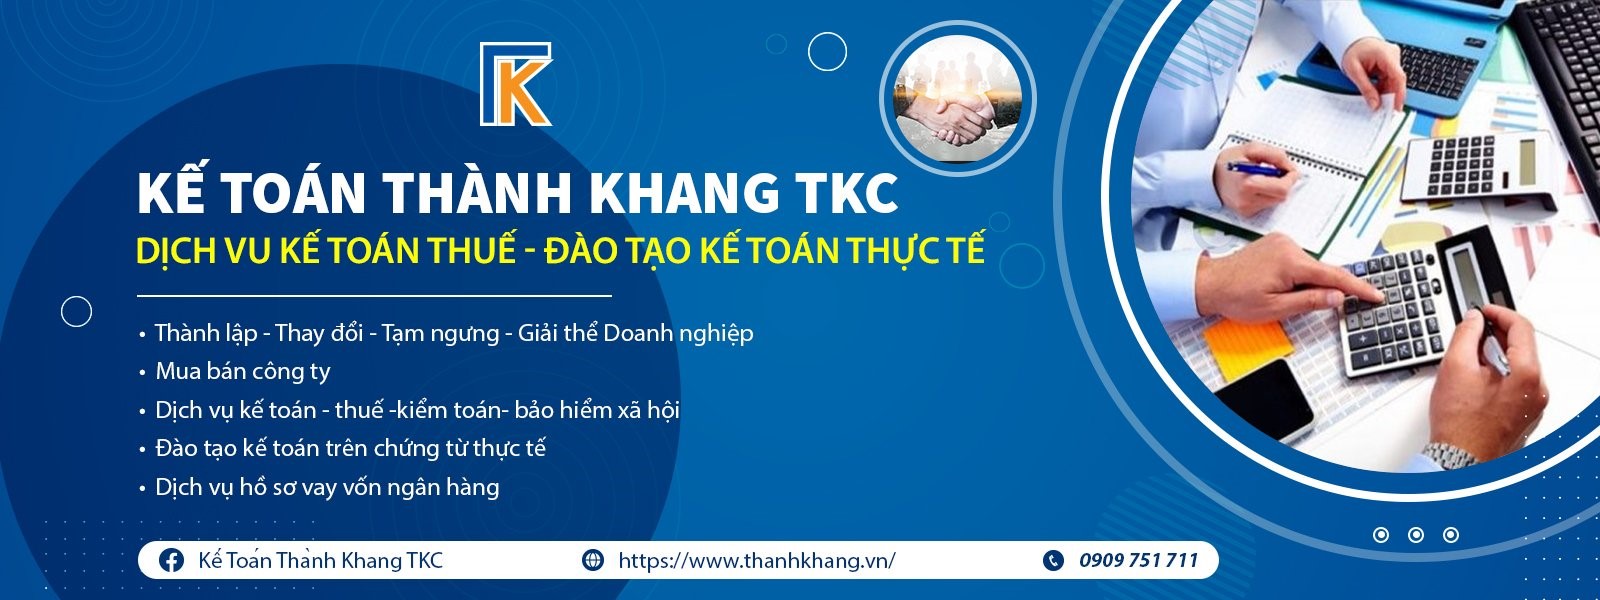 Thông tin tuyển dụng công ty TKC